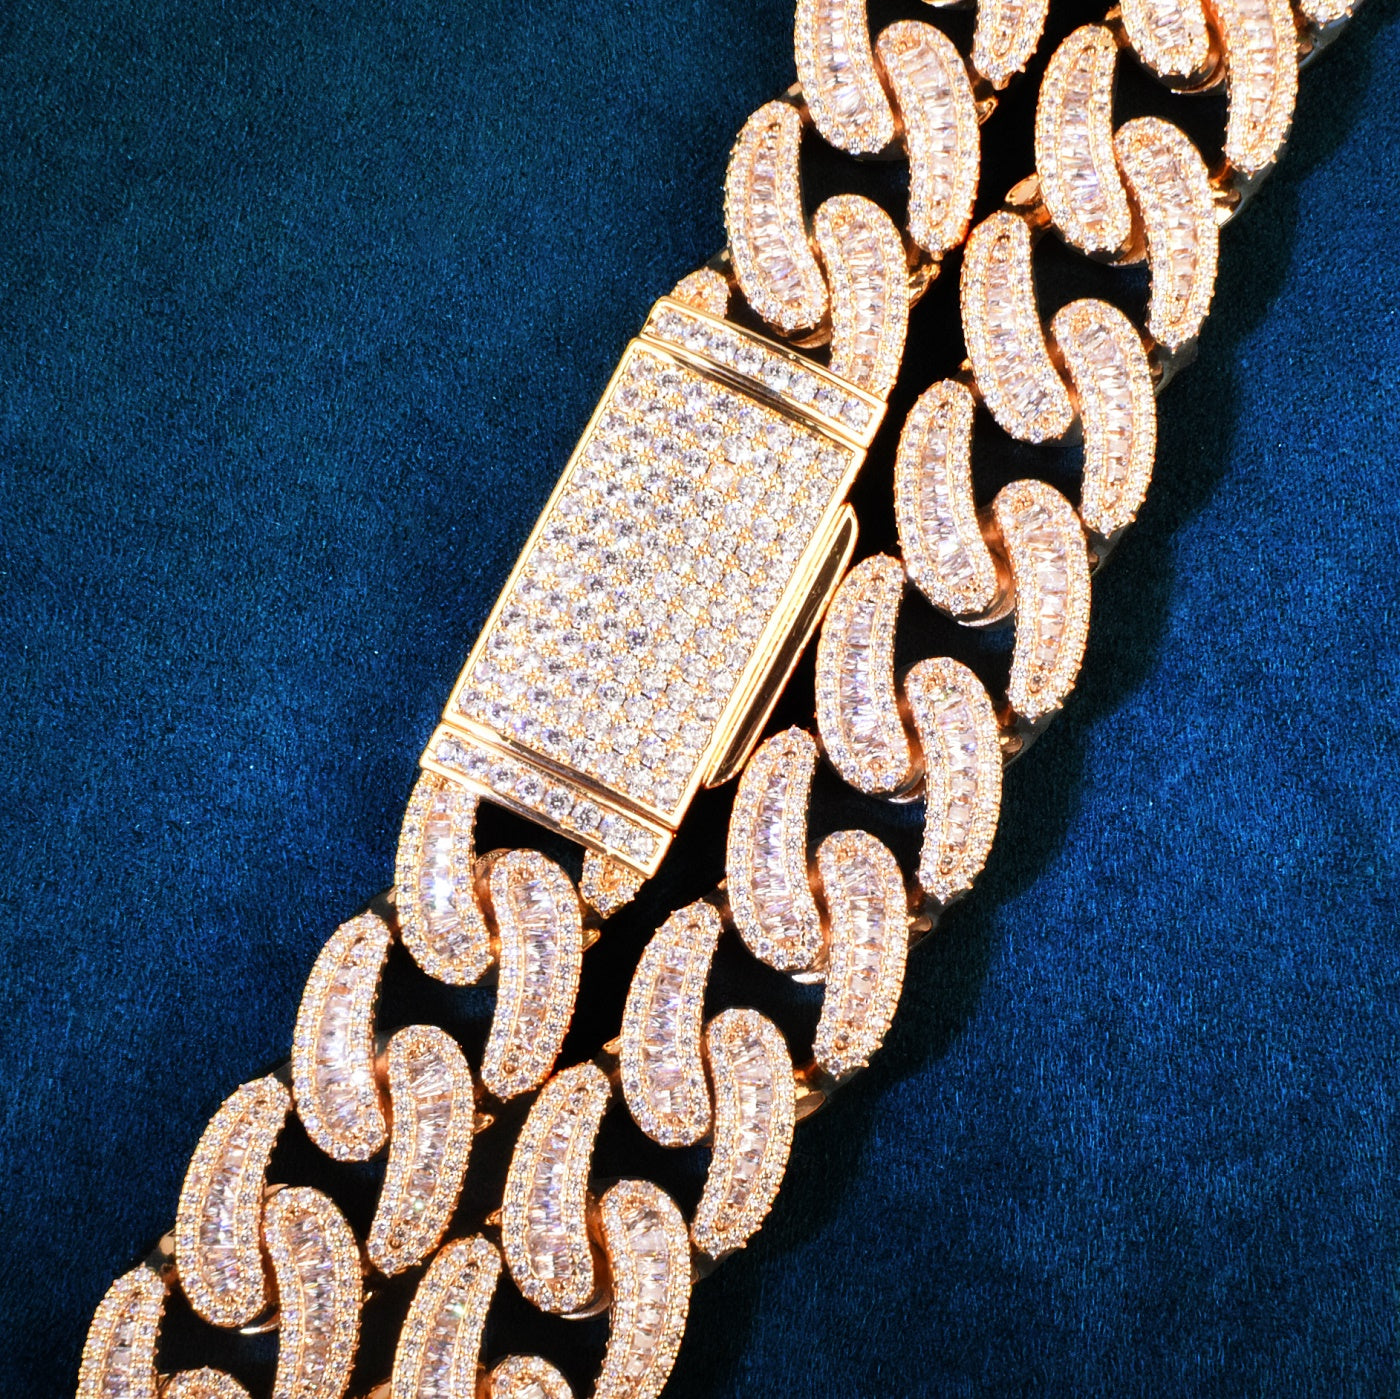 Miami Cuban Chain Baguette Hip Hop Necklace 17mm